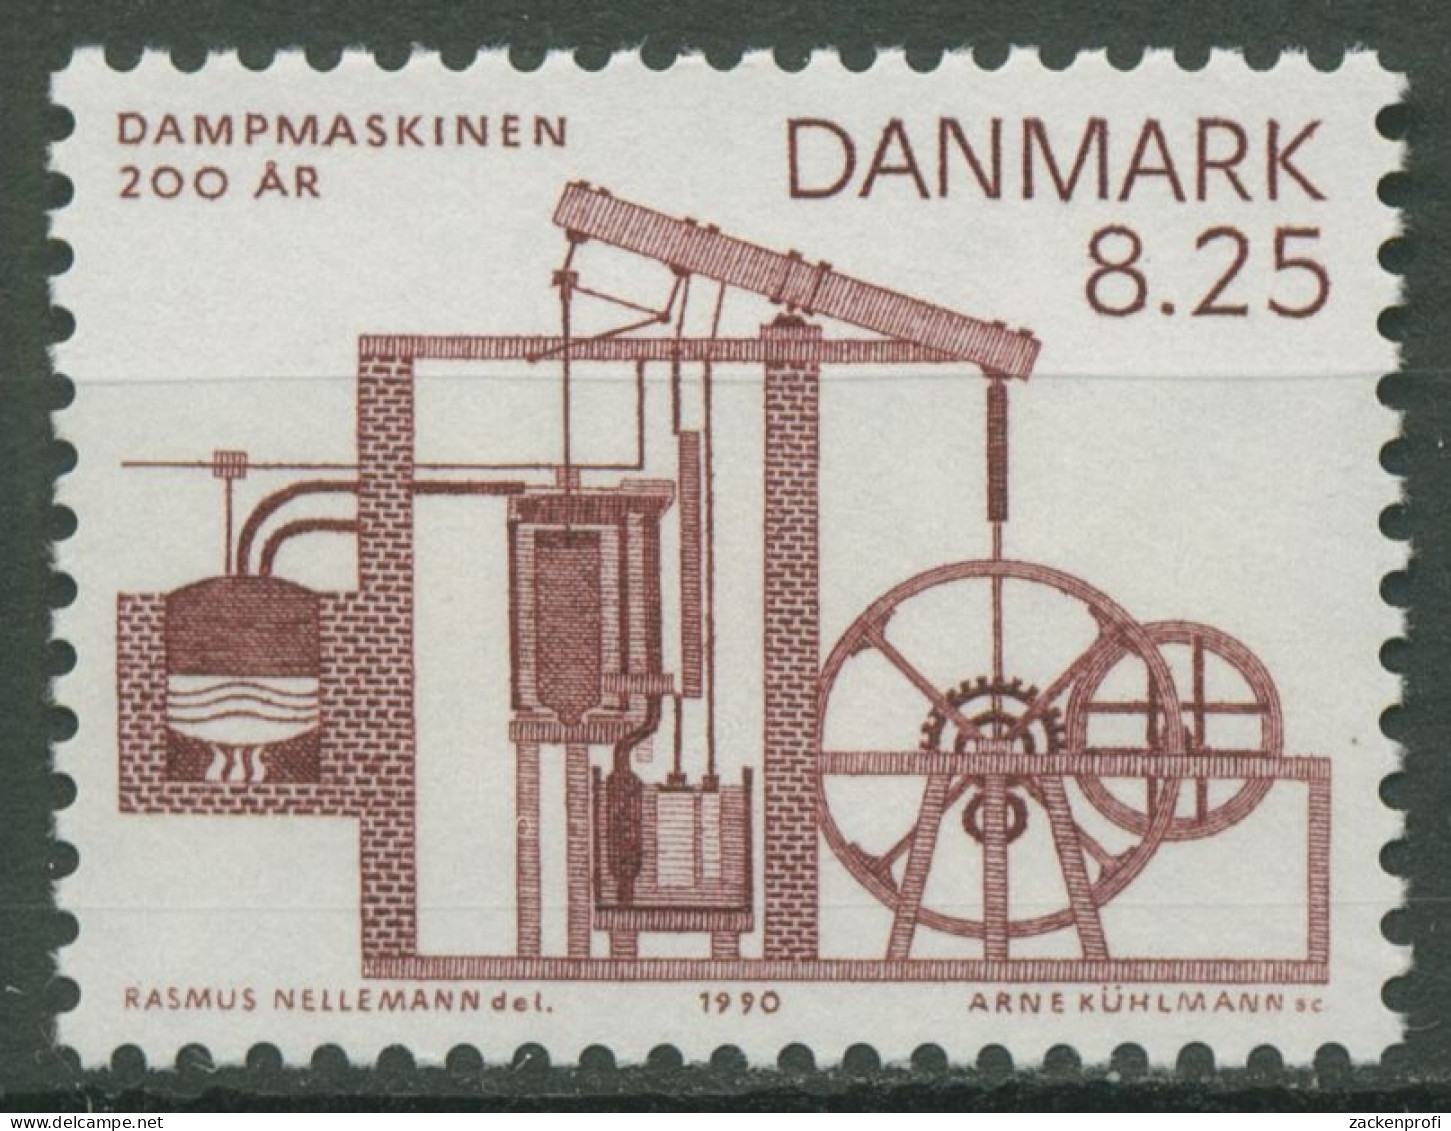 Dänemark 1990 Dampfmaschine 972 Postfrisch - Ongebruikt